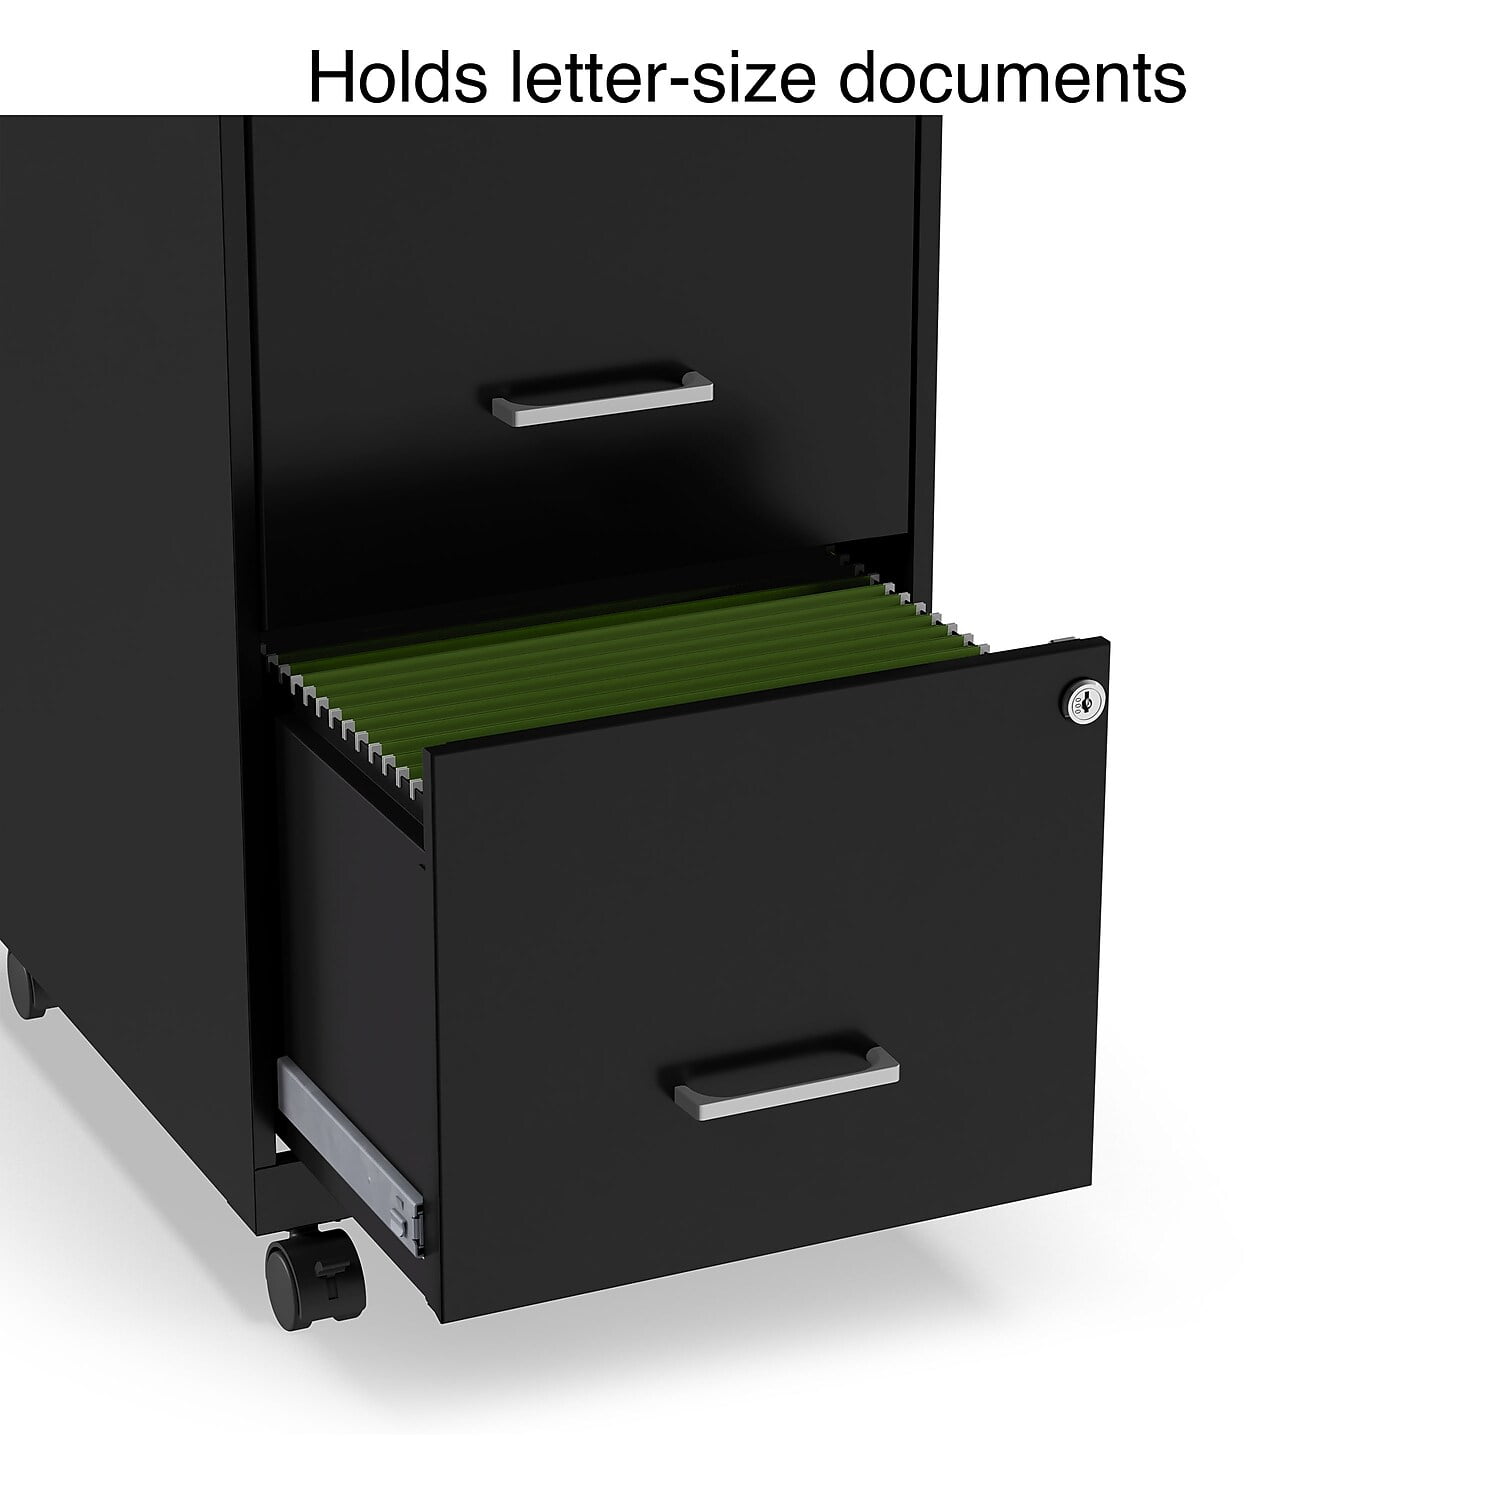 Staples 2-Drawer Vertical File Cabinet, Locking, Letter, Black, 25D (25157d)